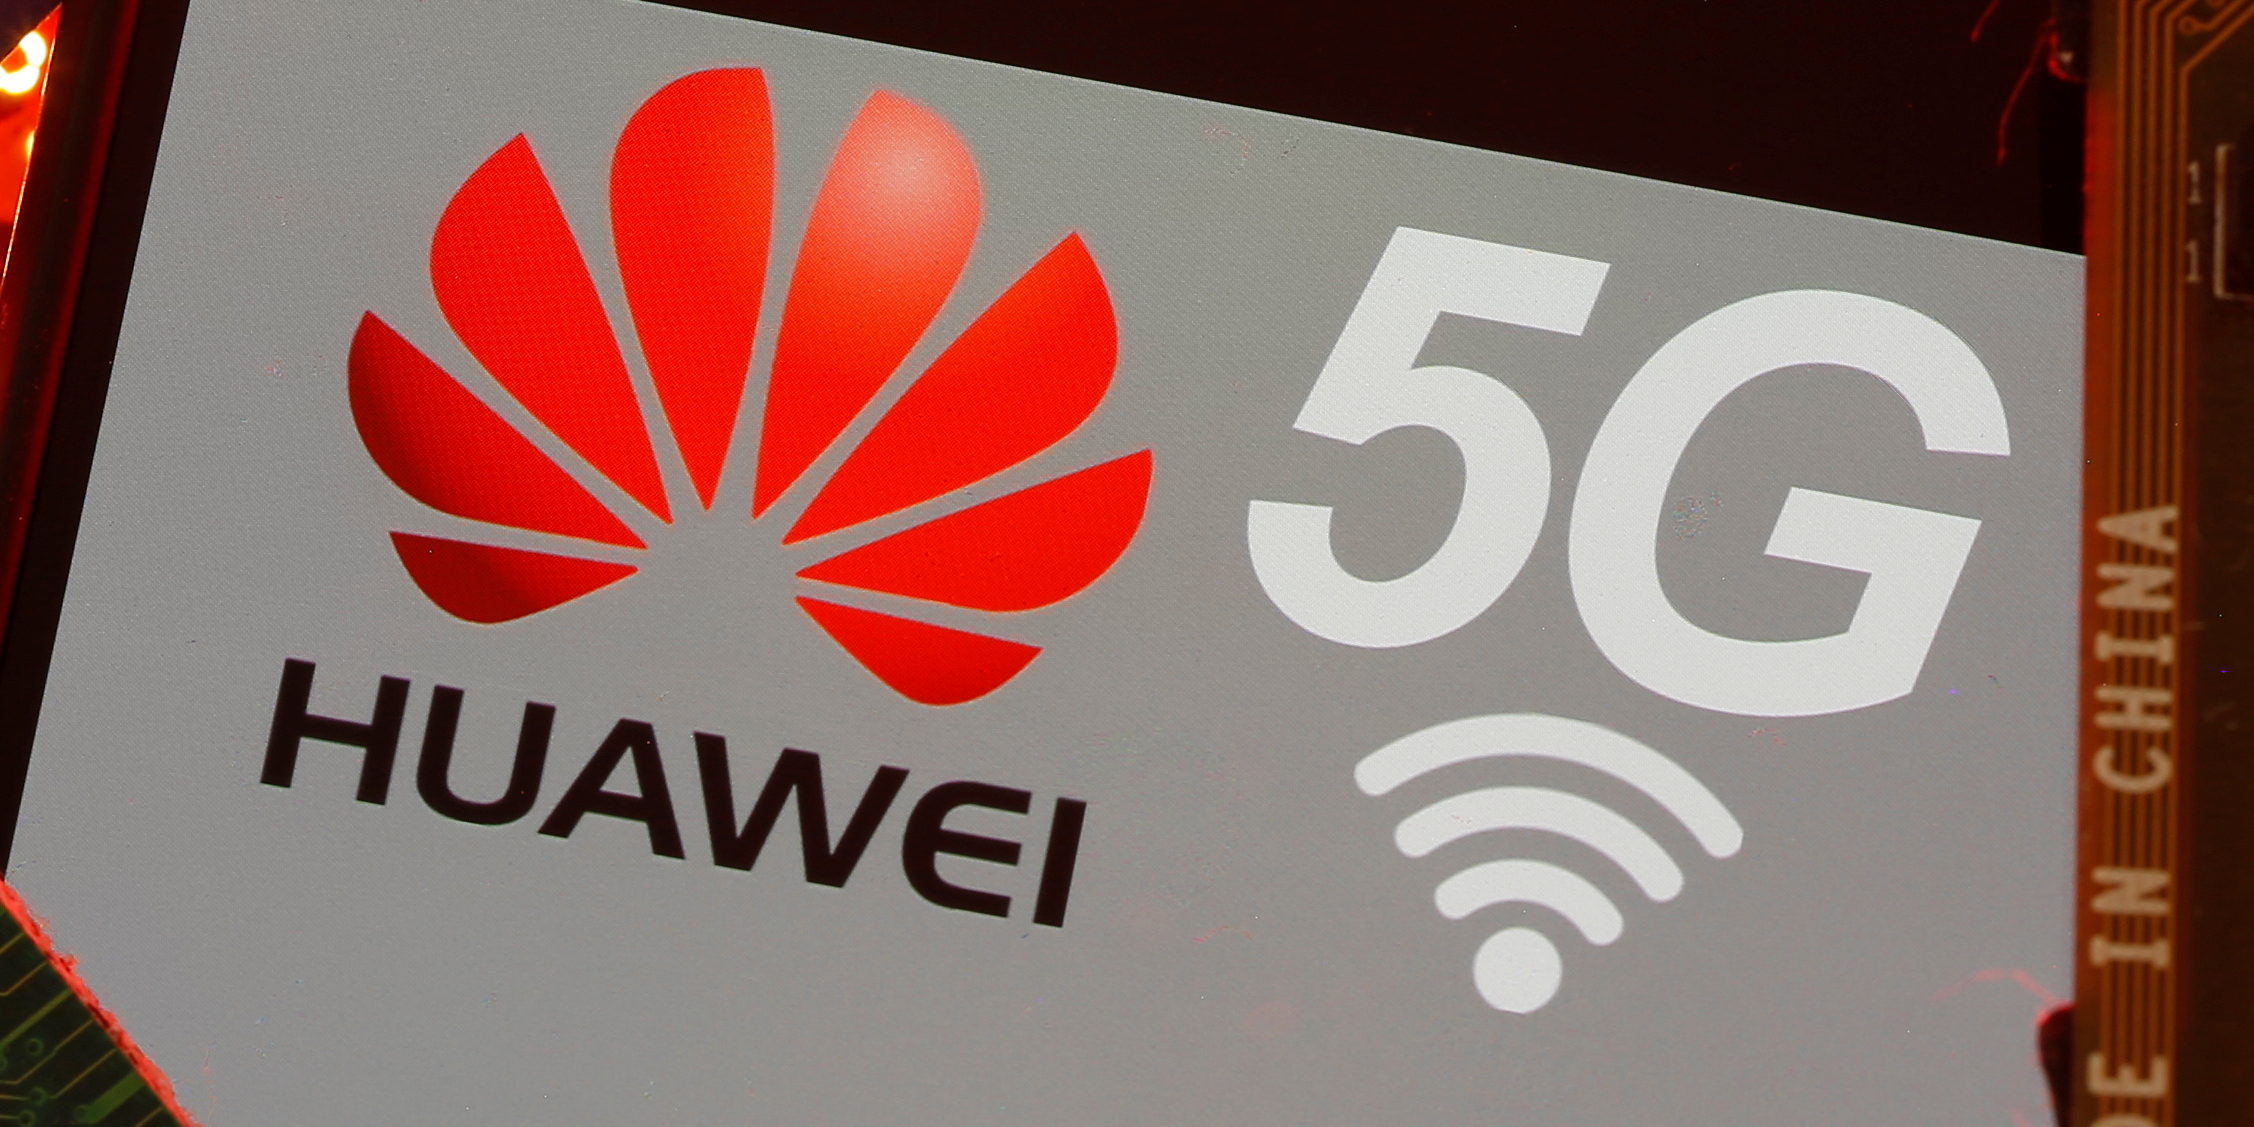 5G : les opérateurs ont reçu des autorisations d'équipements, y compris pour Huawei